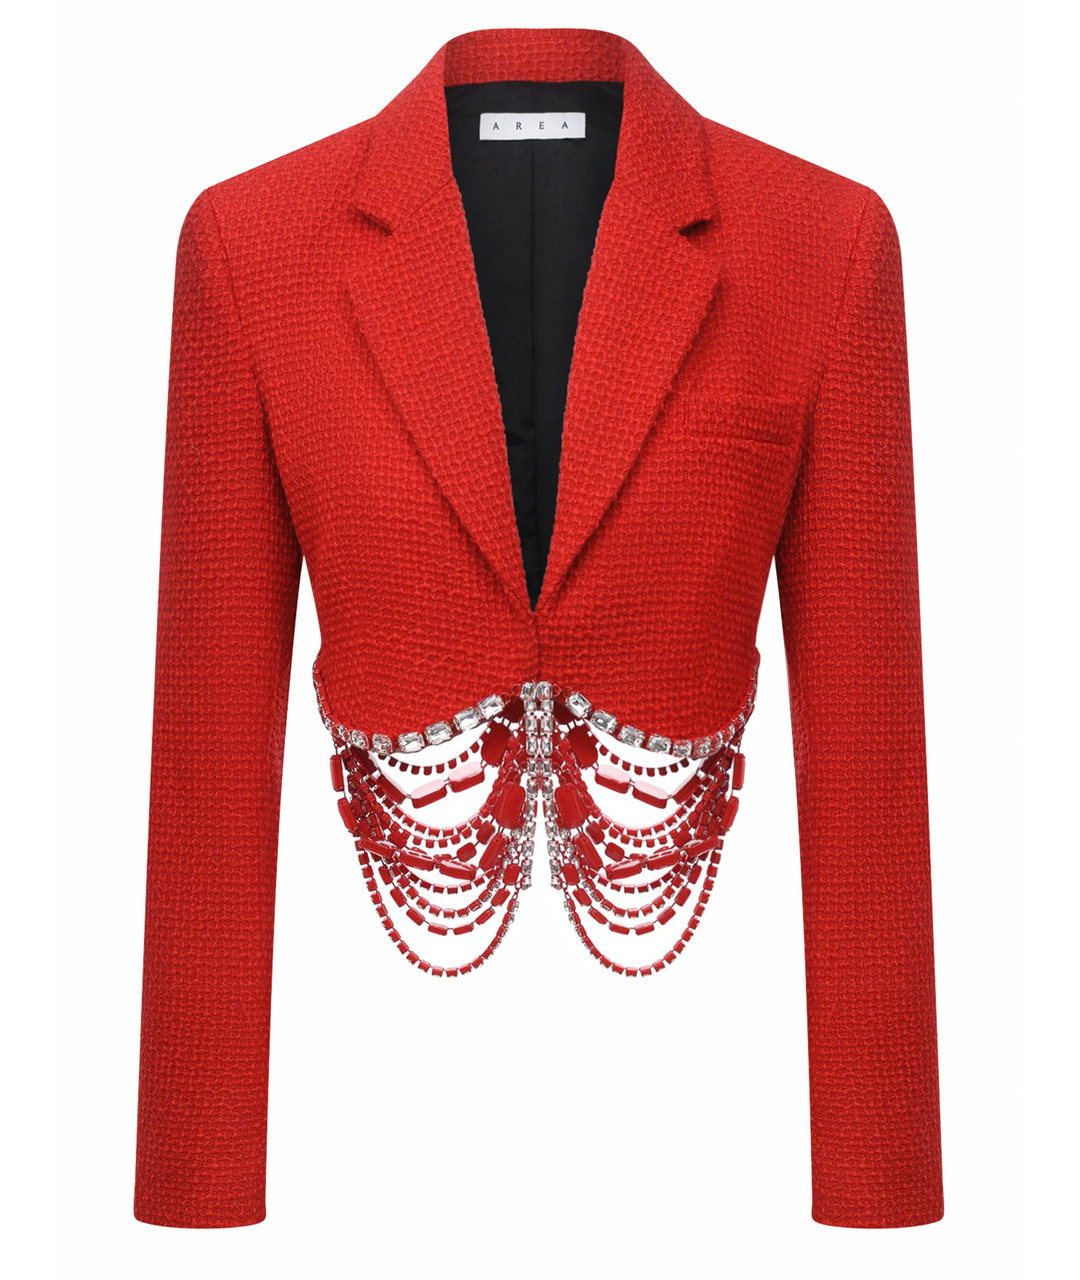 AREA Красный шерстяной жакет/пиджак, фото 1